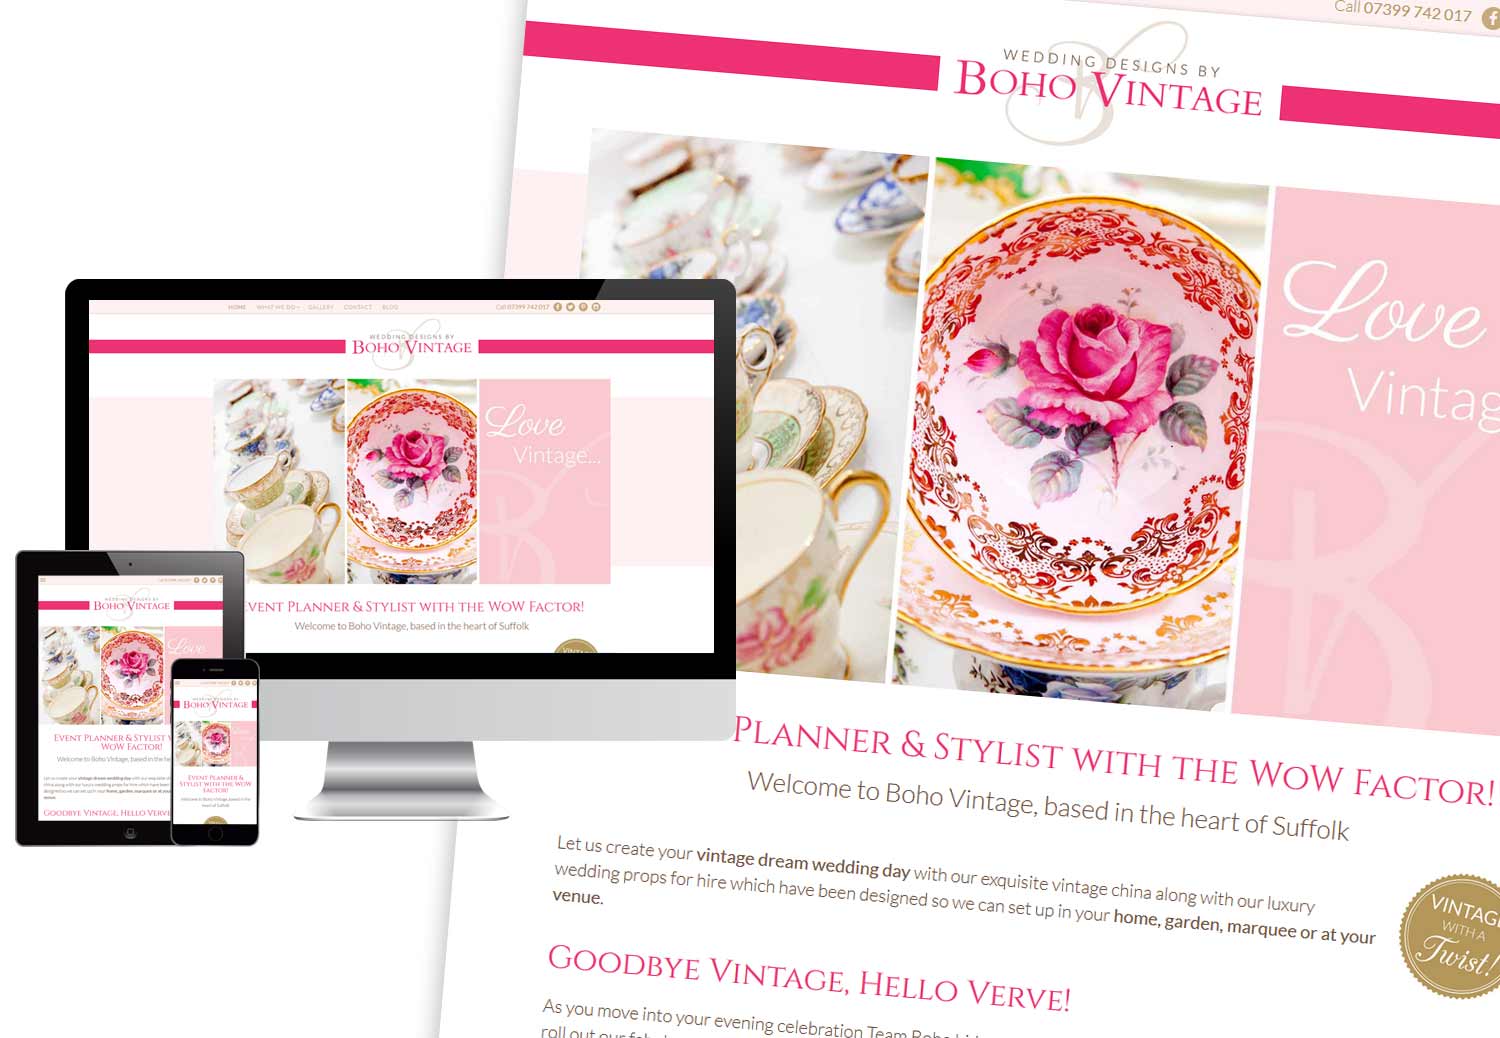 Boho Vintage responsive website design: www.weddingdesignsbyboho.co.uk